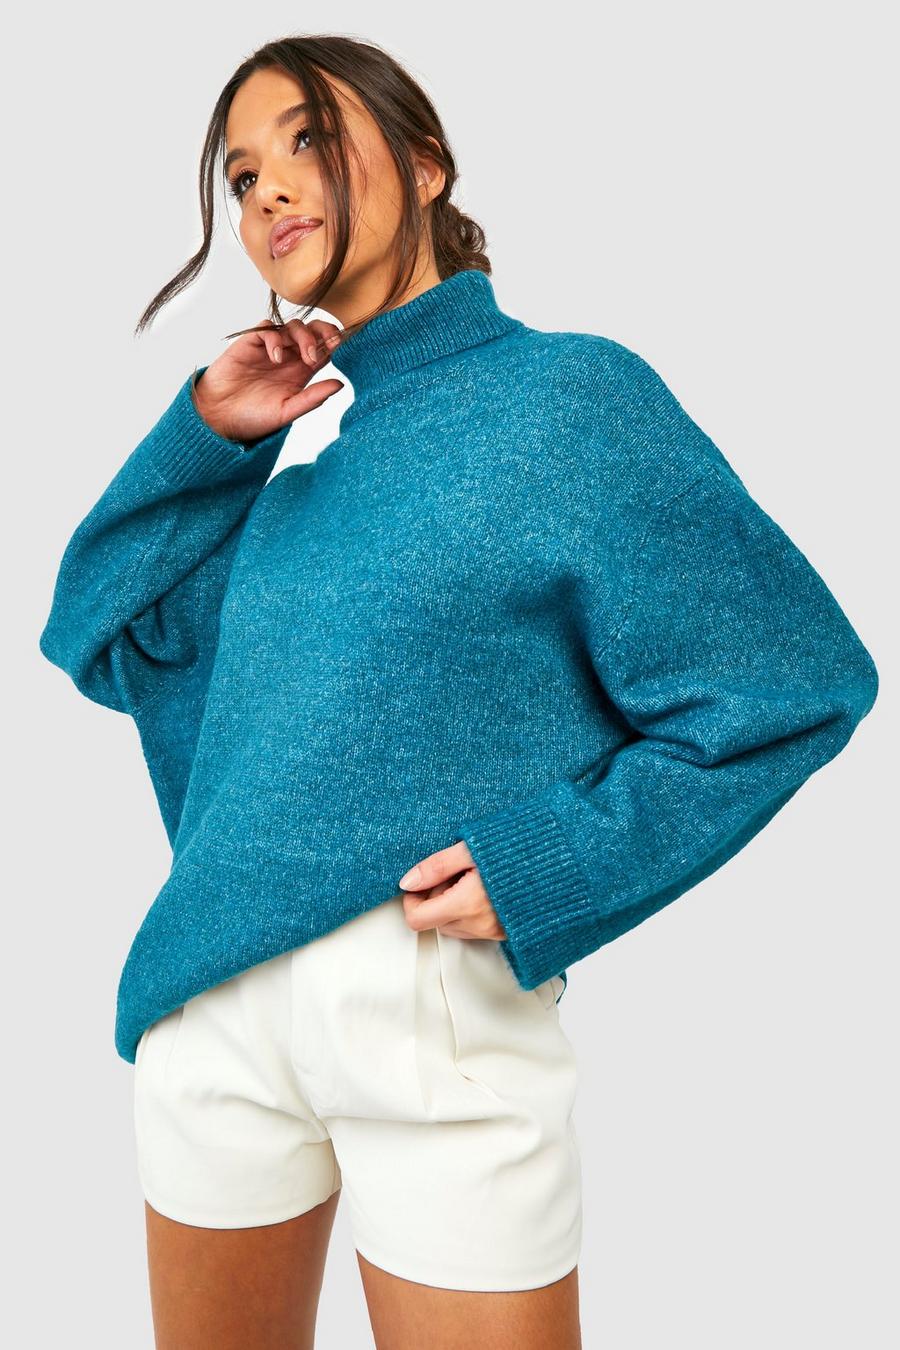 Teal Soft Knit Turtleneck Sweater